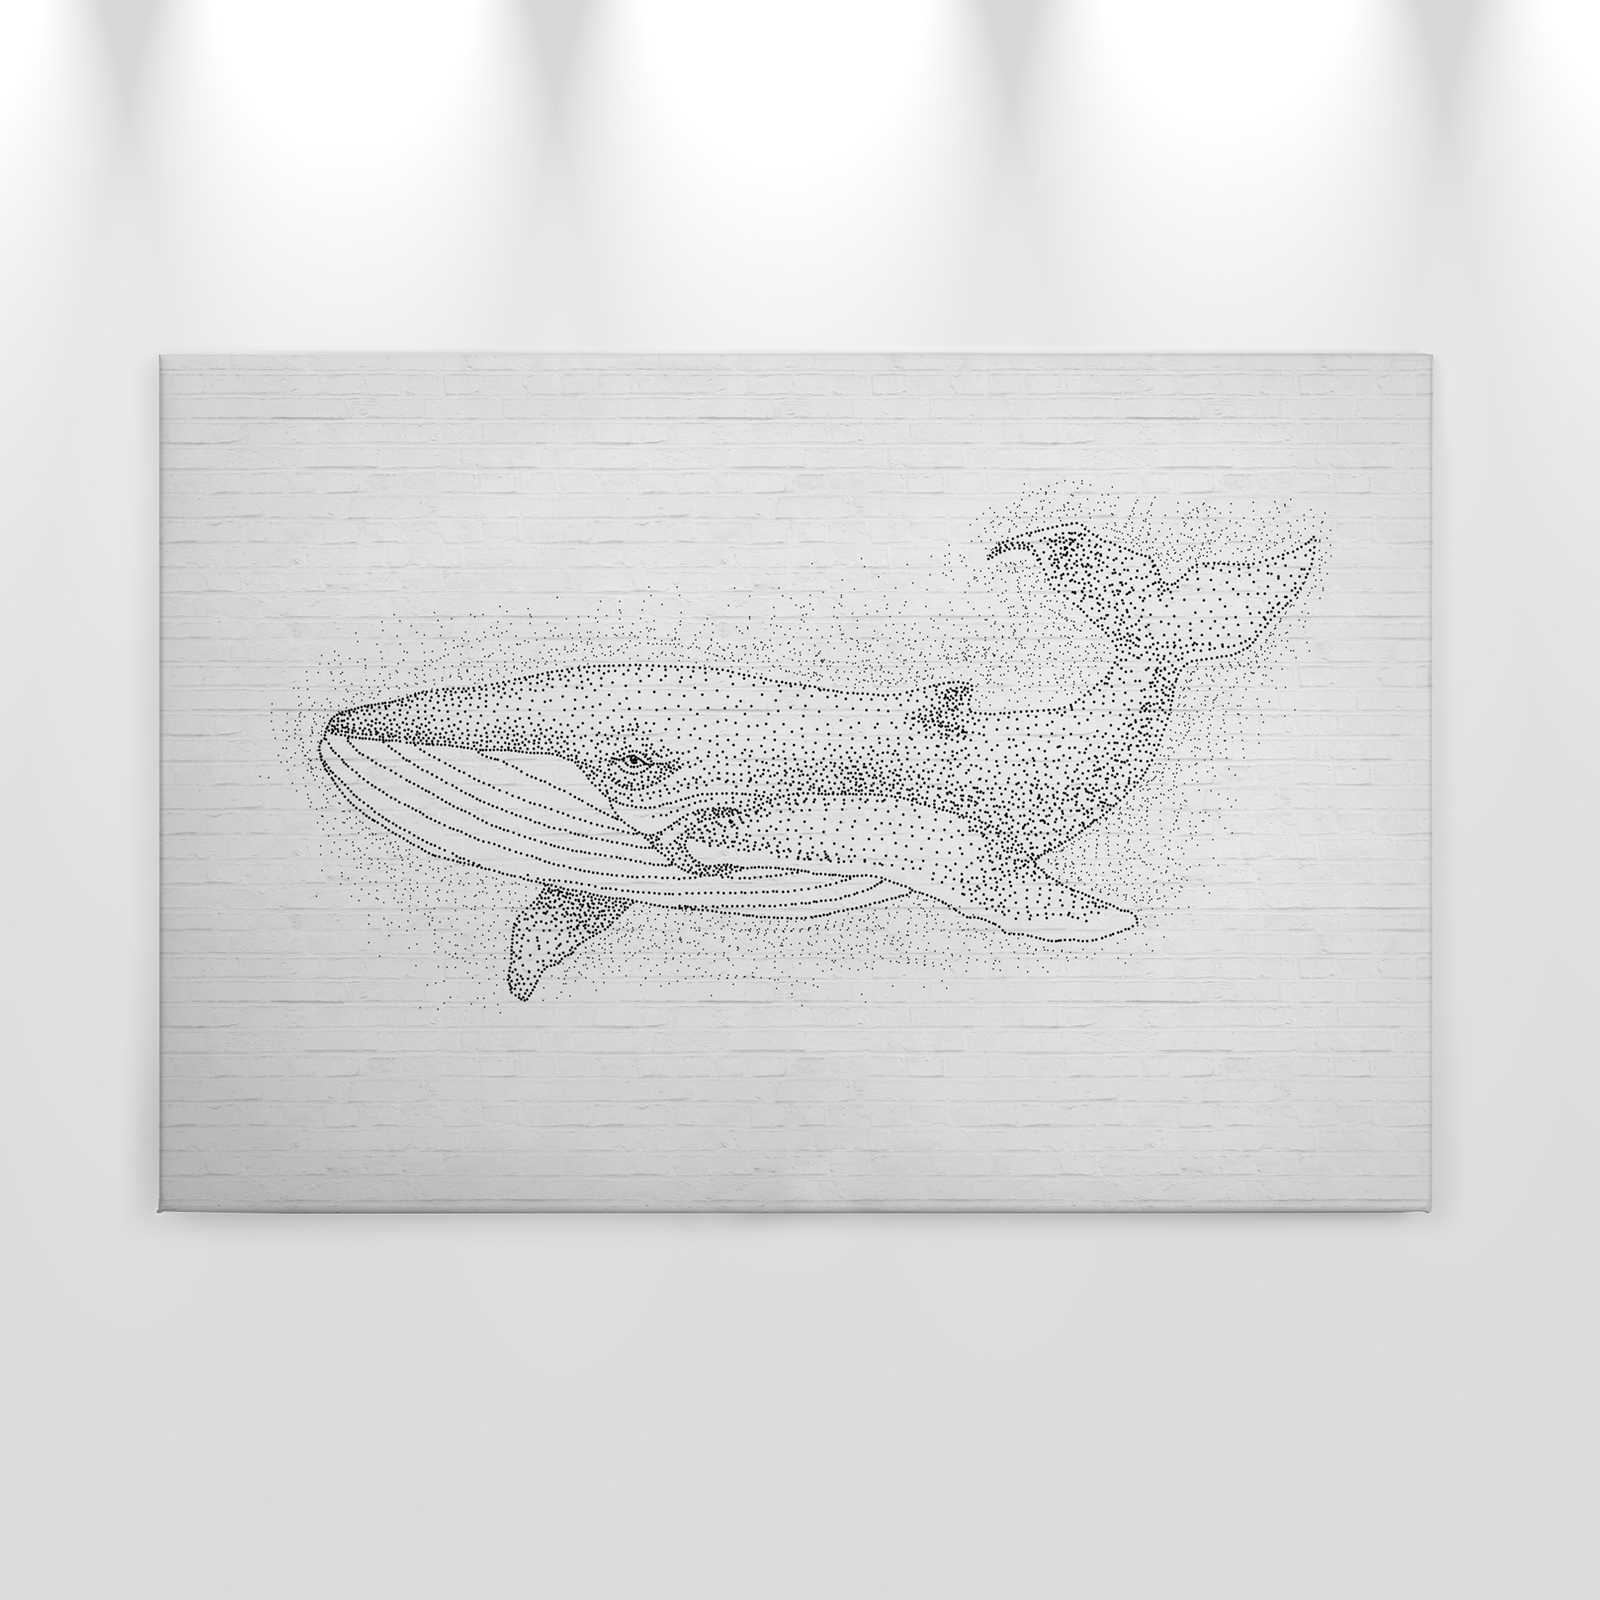             Lienzo de diseño Pared de ladrillos y motivo ballena - 0,90 m x 0,60 m
        